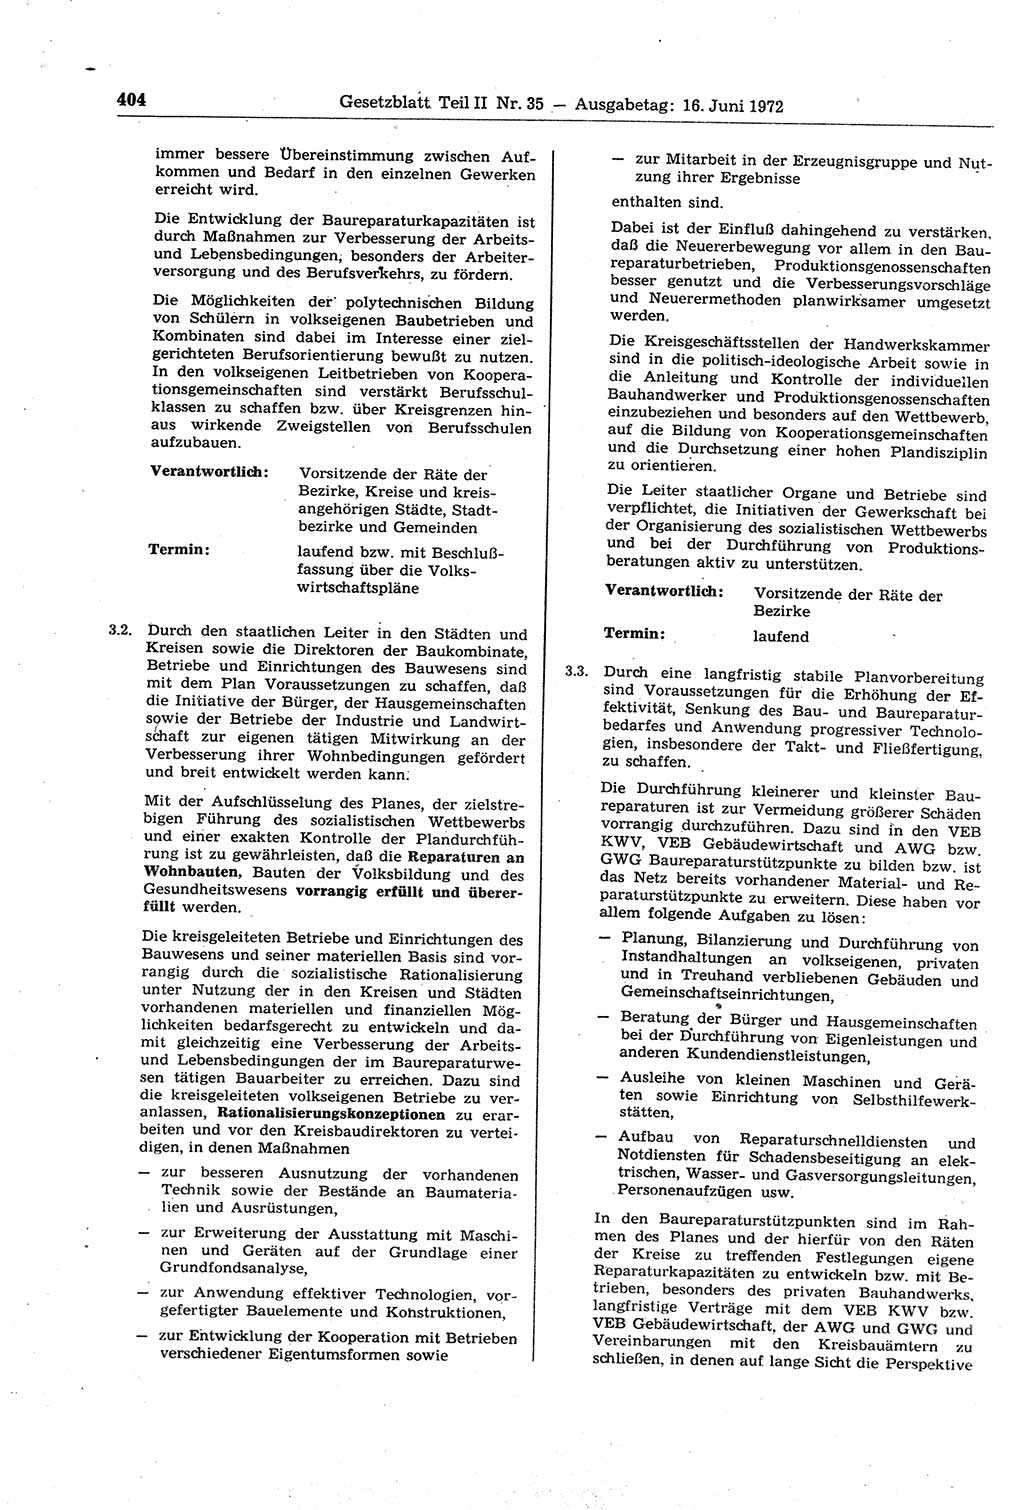 Gesetzblatt (GBl.) der Deutschen Demokratischen Republik (DDR) Teil ⅠⅠ 1972, Seite 404 (GBl. DDR ⅠⅠ 1972, S. 404)